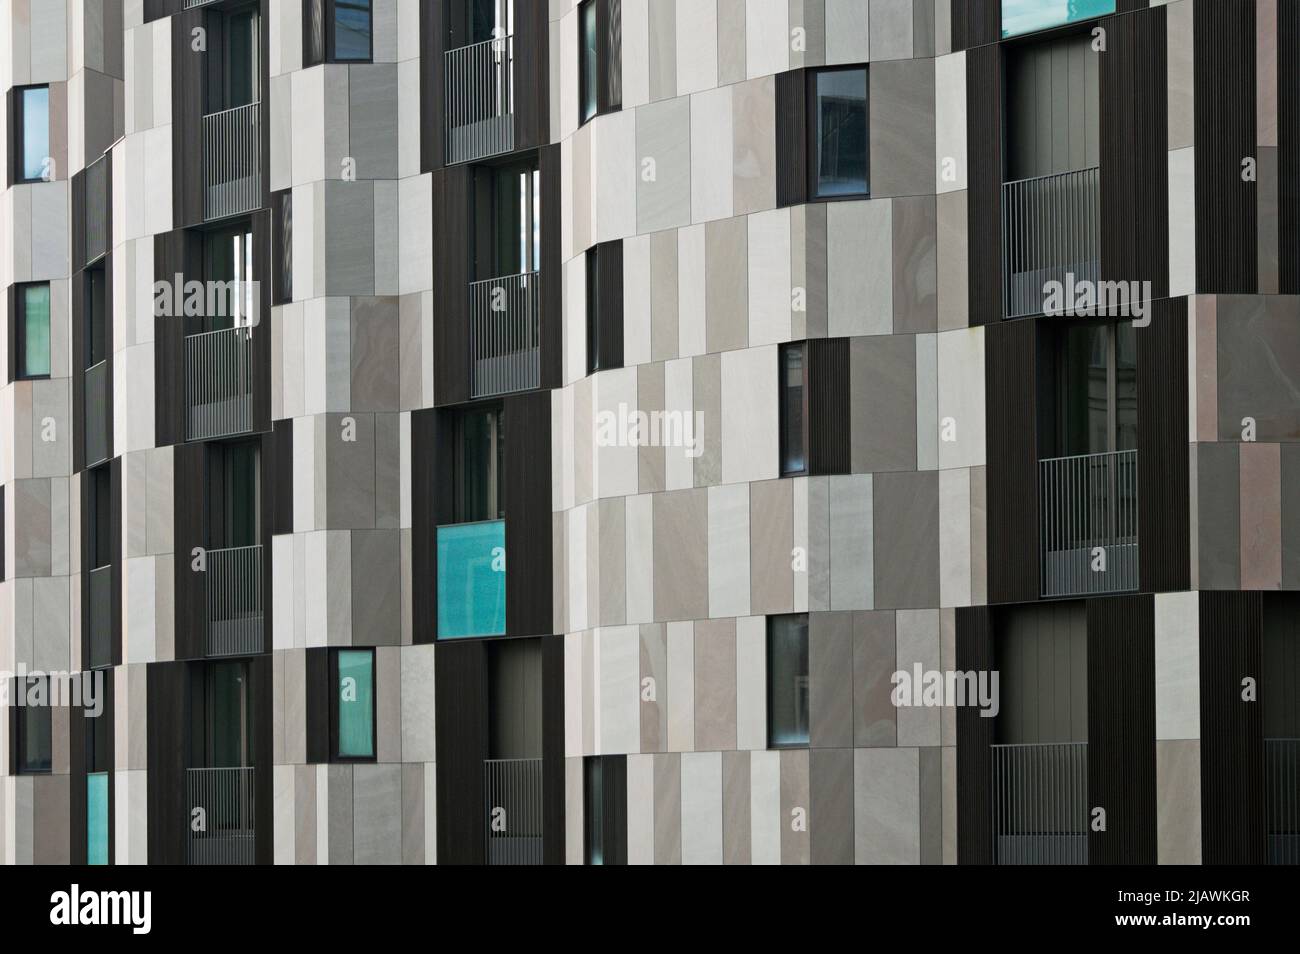 Moderno bloque de apartamentos, La corte verde (Cino Zucchi arquitectos) Corso Como, Porta Nuova, Milán, Italia Foto de stock